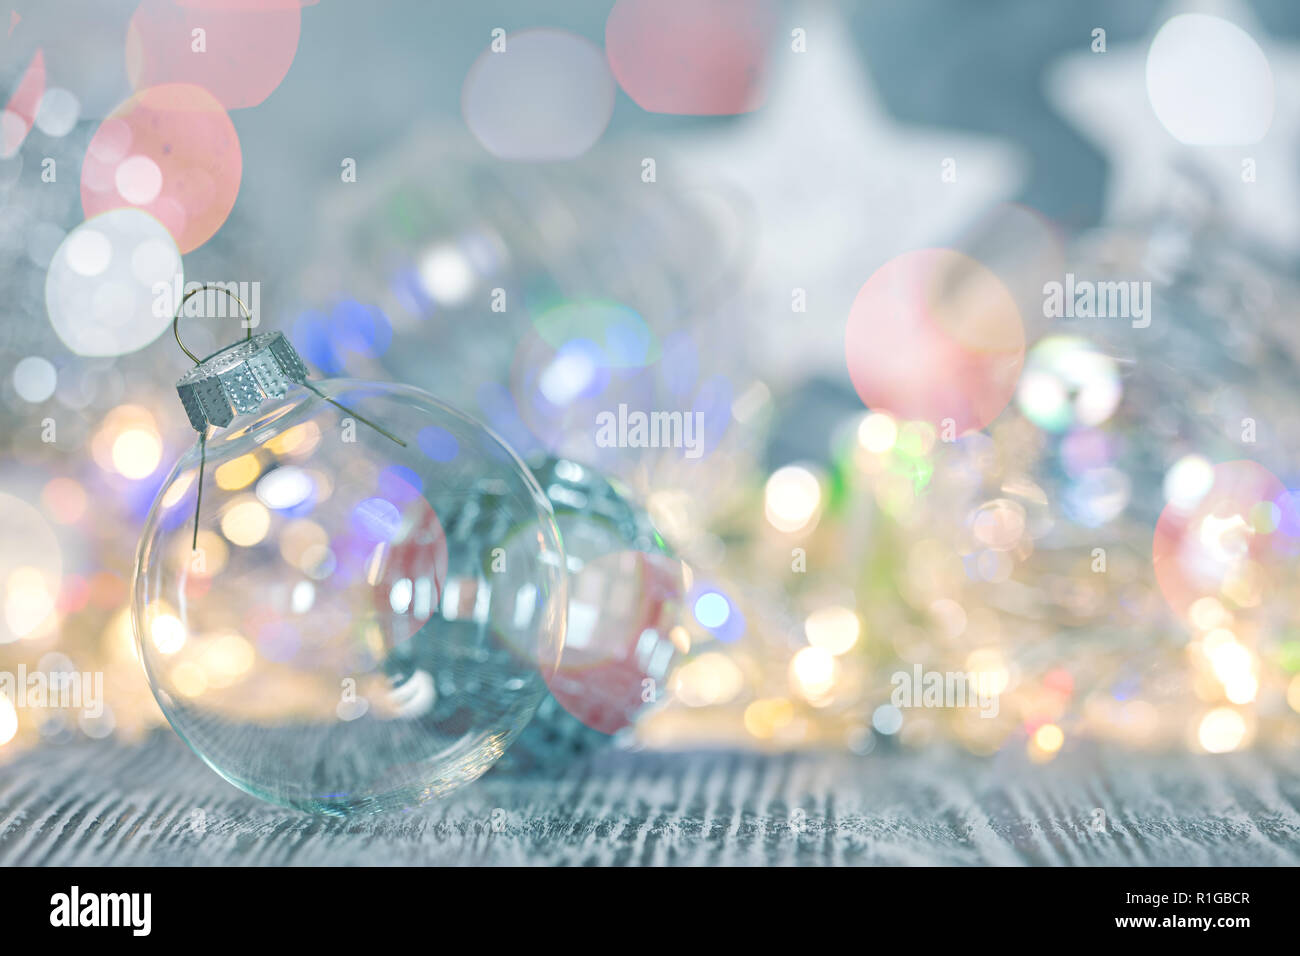 Weihnachten dekorativen Kugeln aus Glas gegen verwackelte glühende Holiday Lights Stockfoto